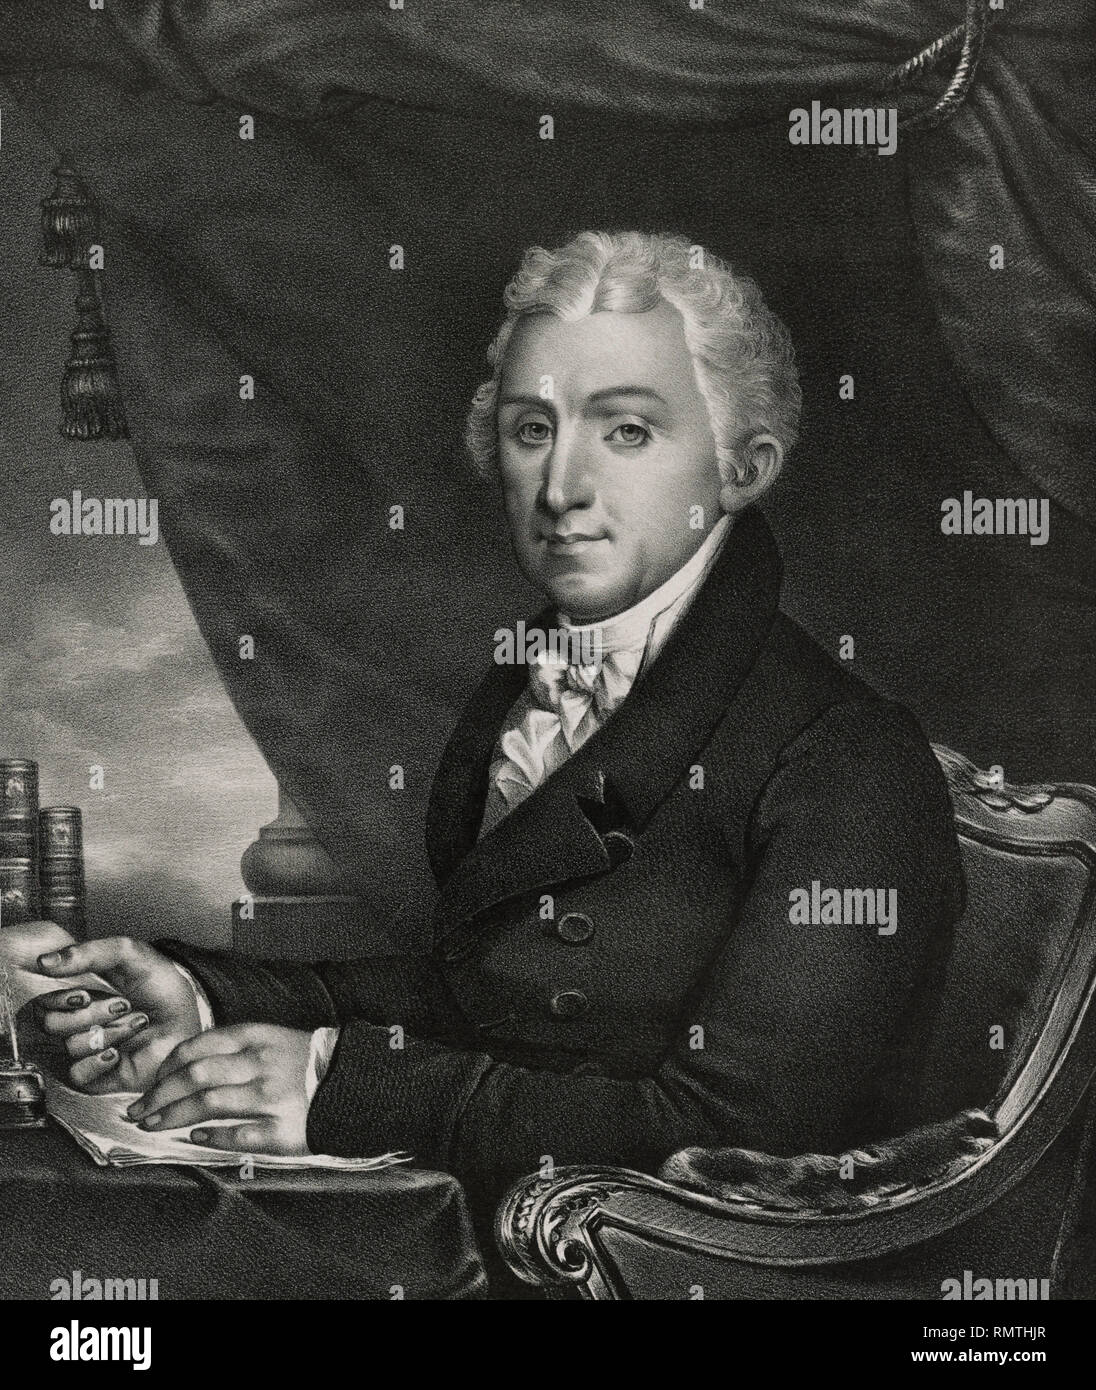 James Monroe, 5. der Präsident der Vereinigten Staaten, von einer ursprünglichen Gemälde von Gilbert Stuart, durch G. Endicott, New York, 1830, veröffentlichte erstellt Stockfoto